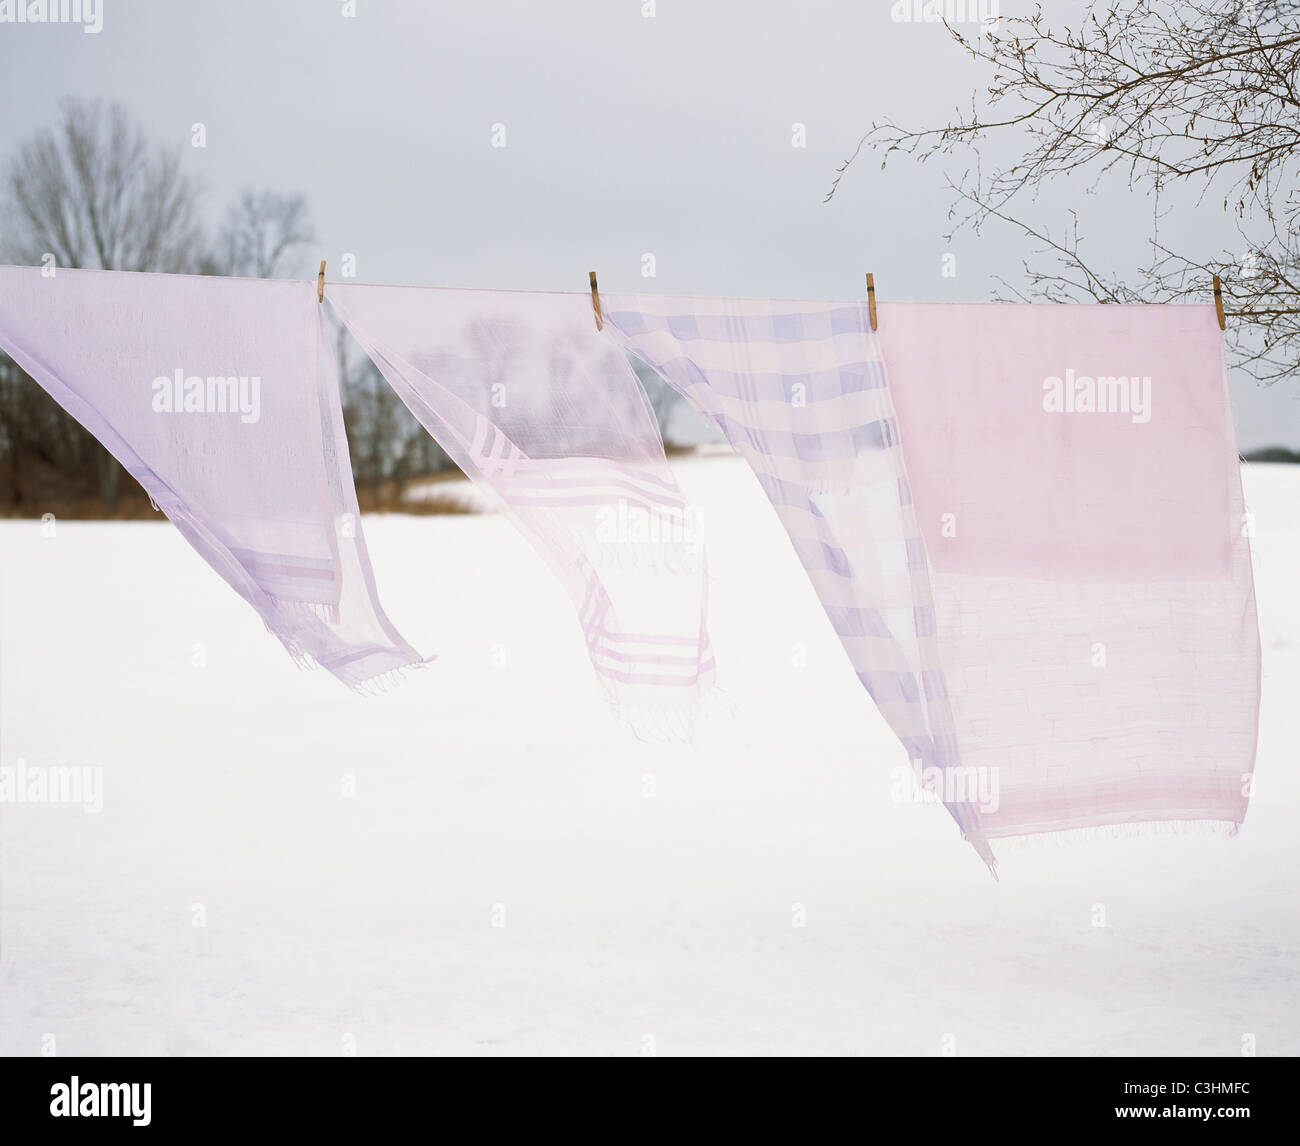 Schals auf Wäscheleine im Schnee Stockfoto